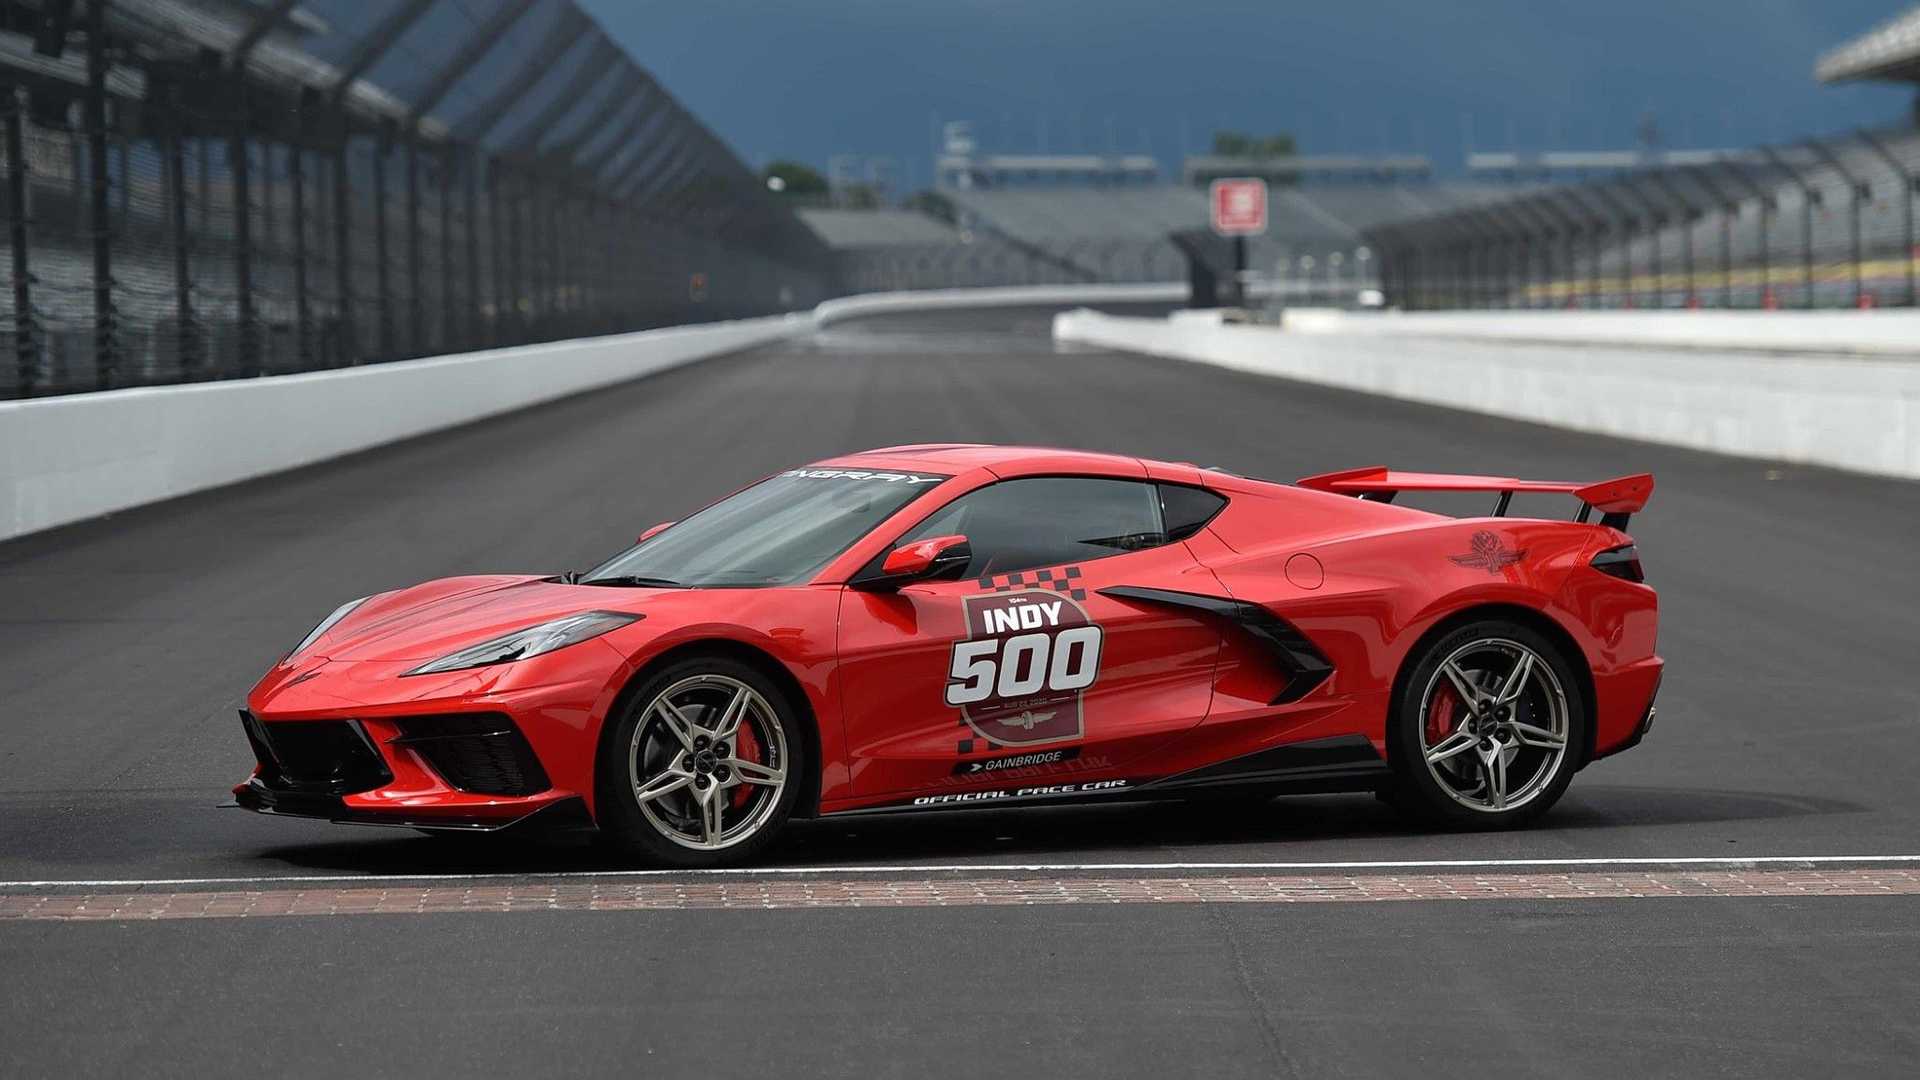 The 2020 Corvette Indy Pace Car